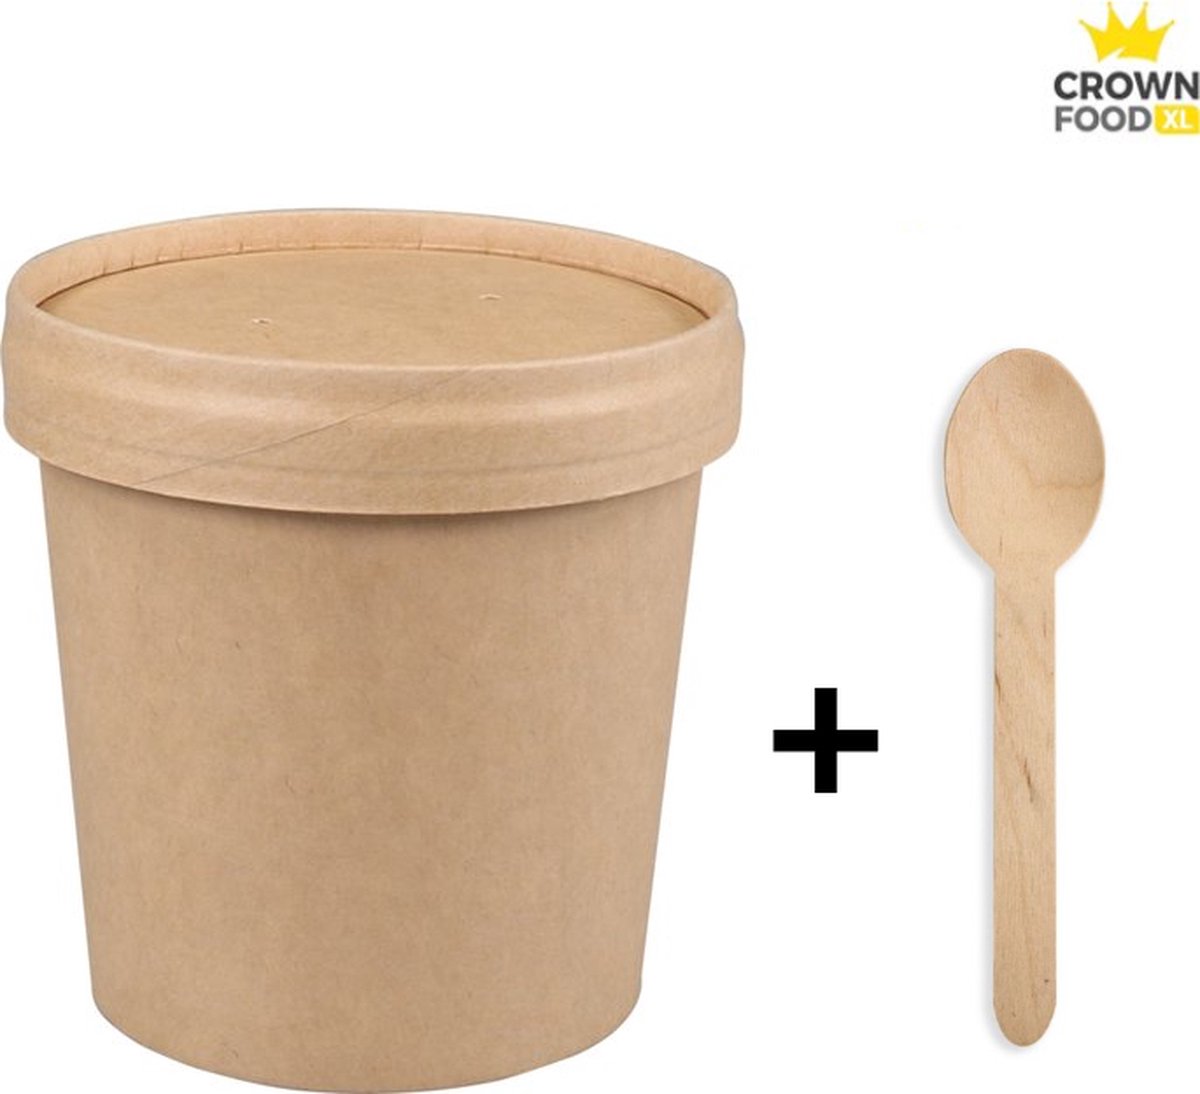 100st Soup Cup Soep Beker karton 350ml incl deksels + 100 lepels hout - Crown Food XL